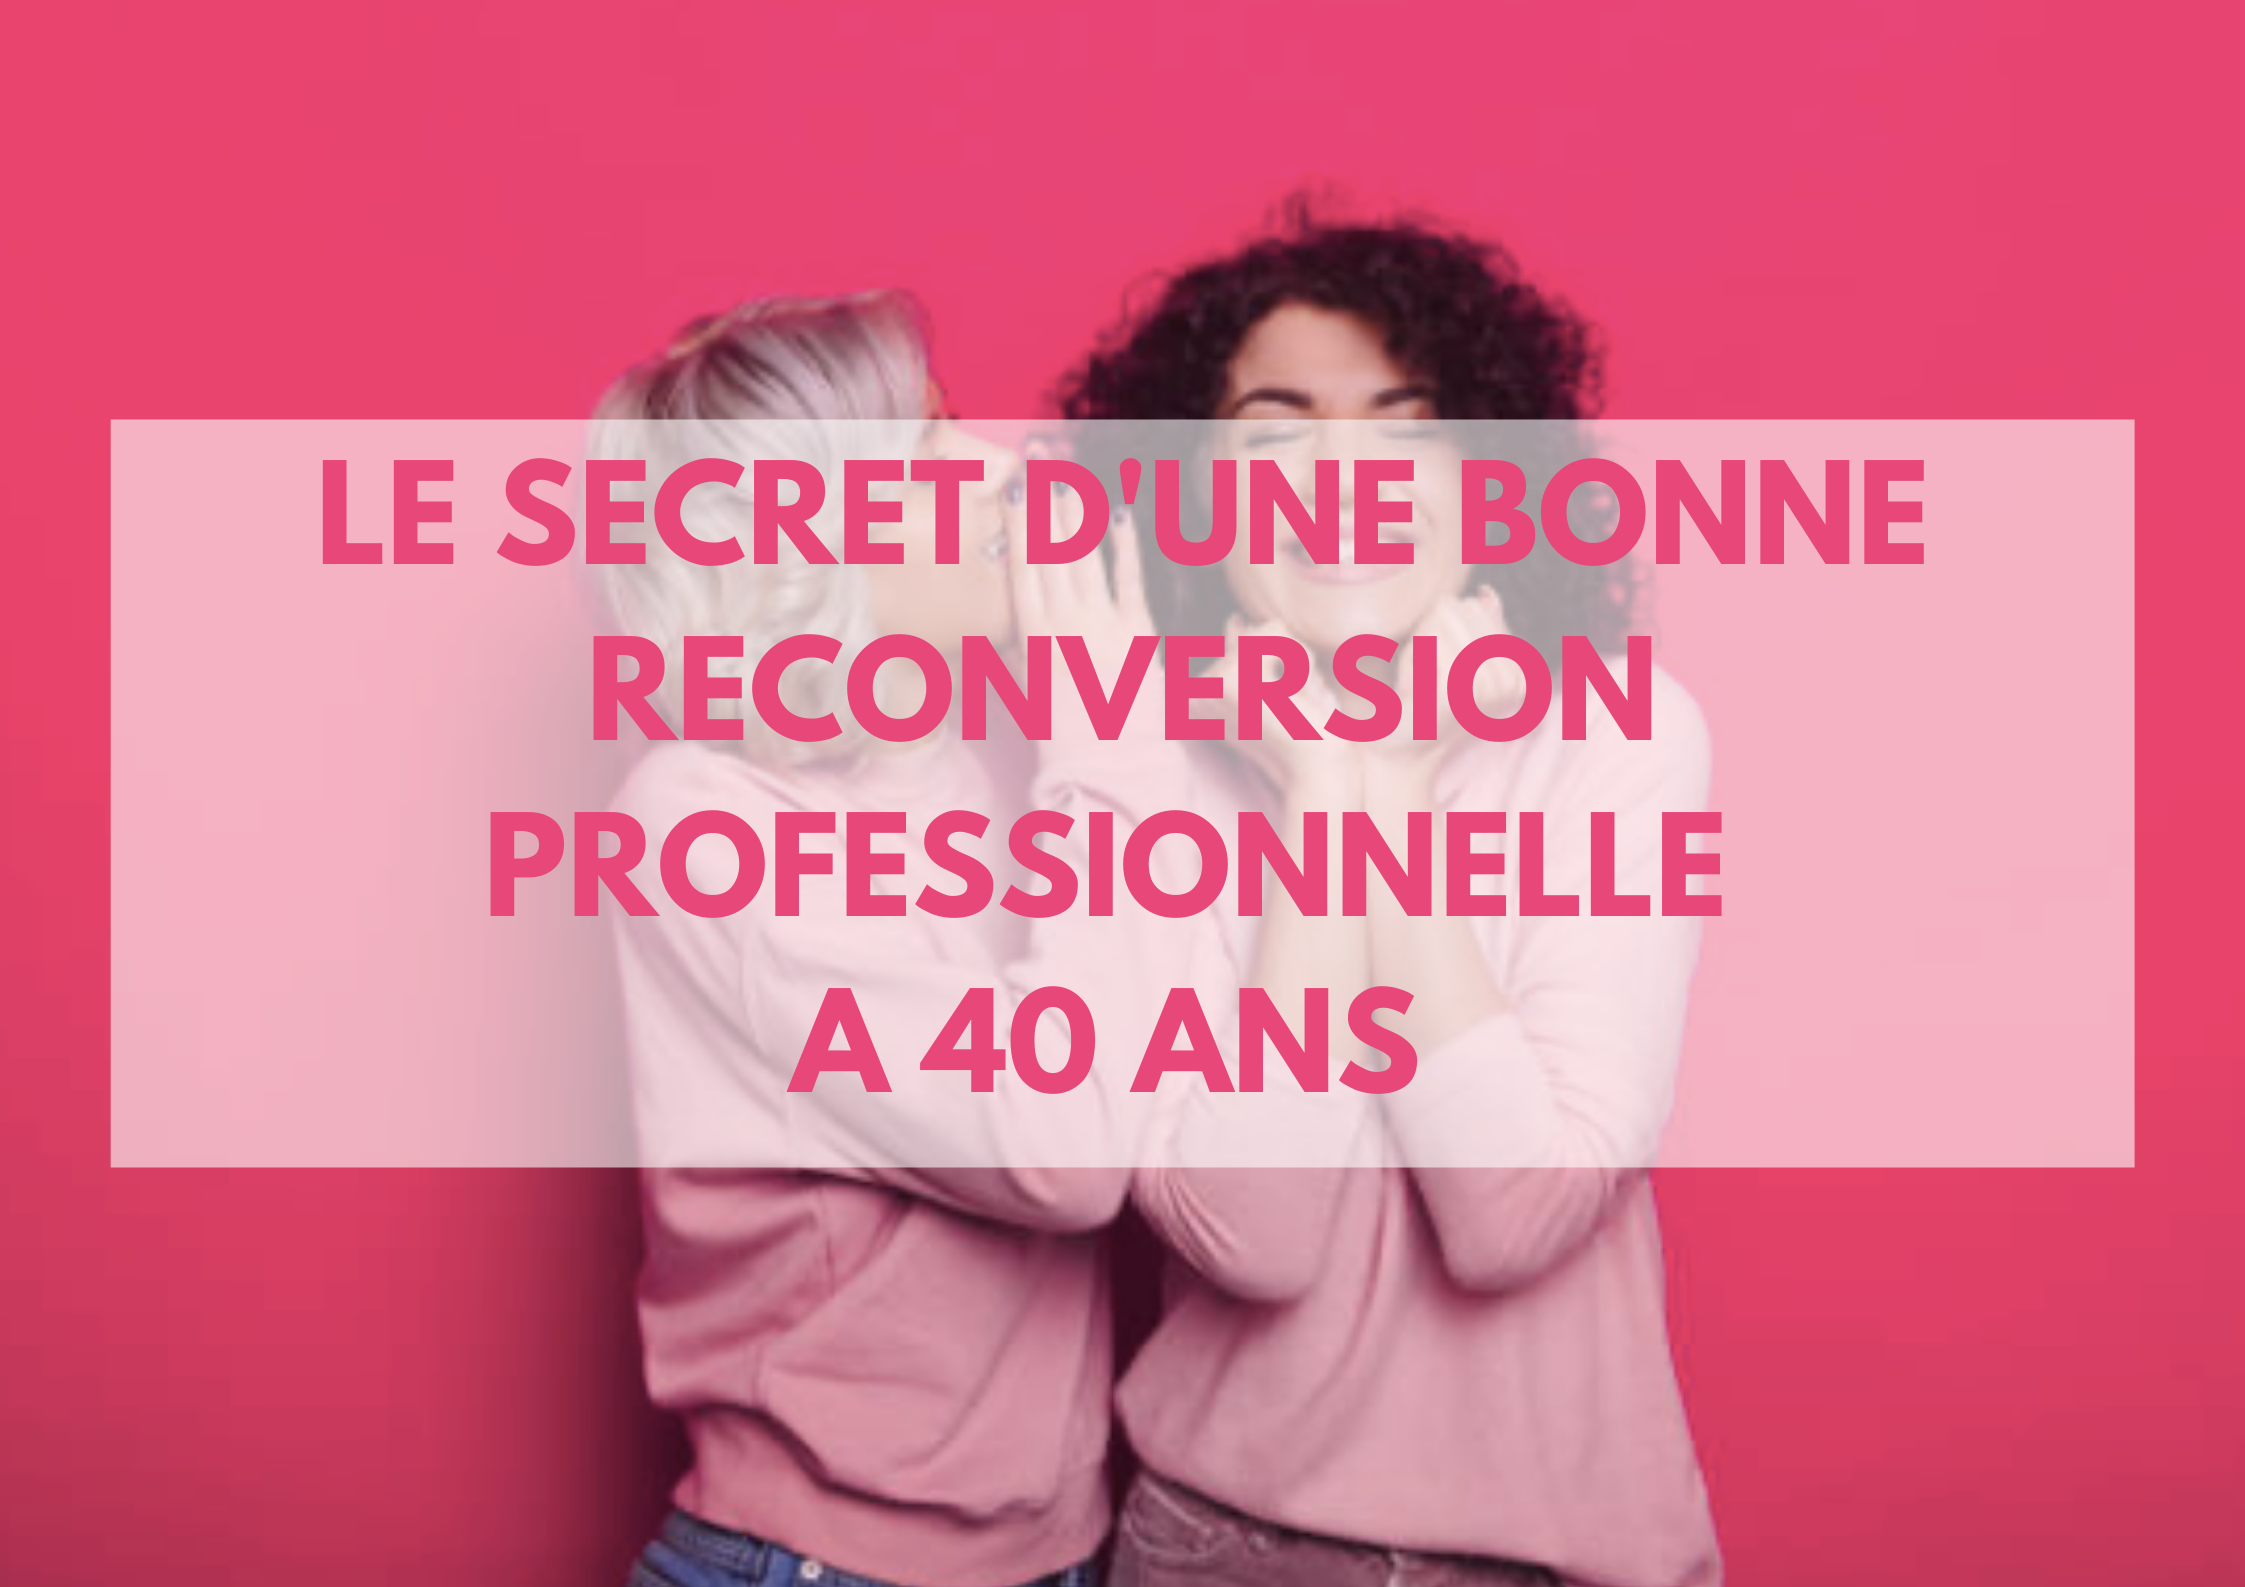 You are currently viewing Le secret d’une bonne reconversion professionnelle à 40 ans